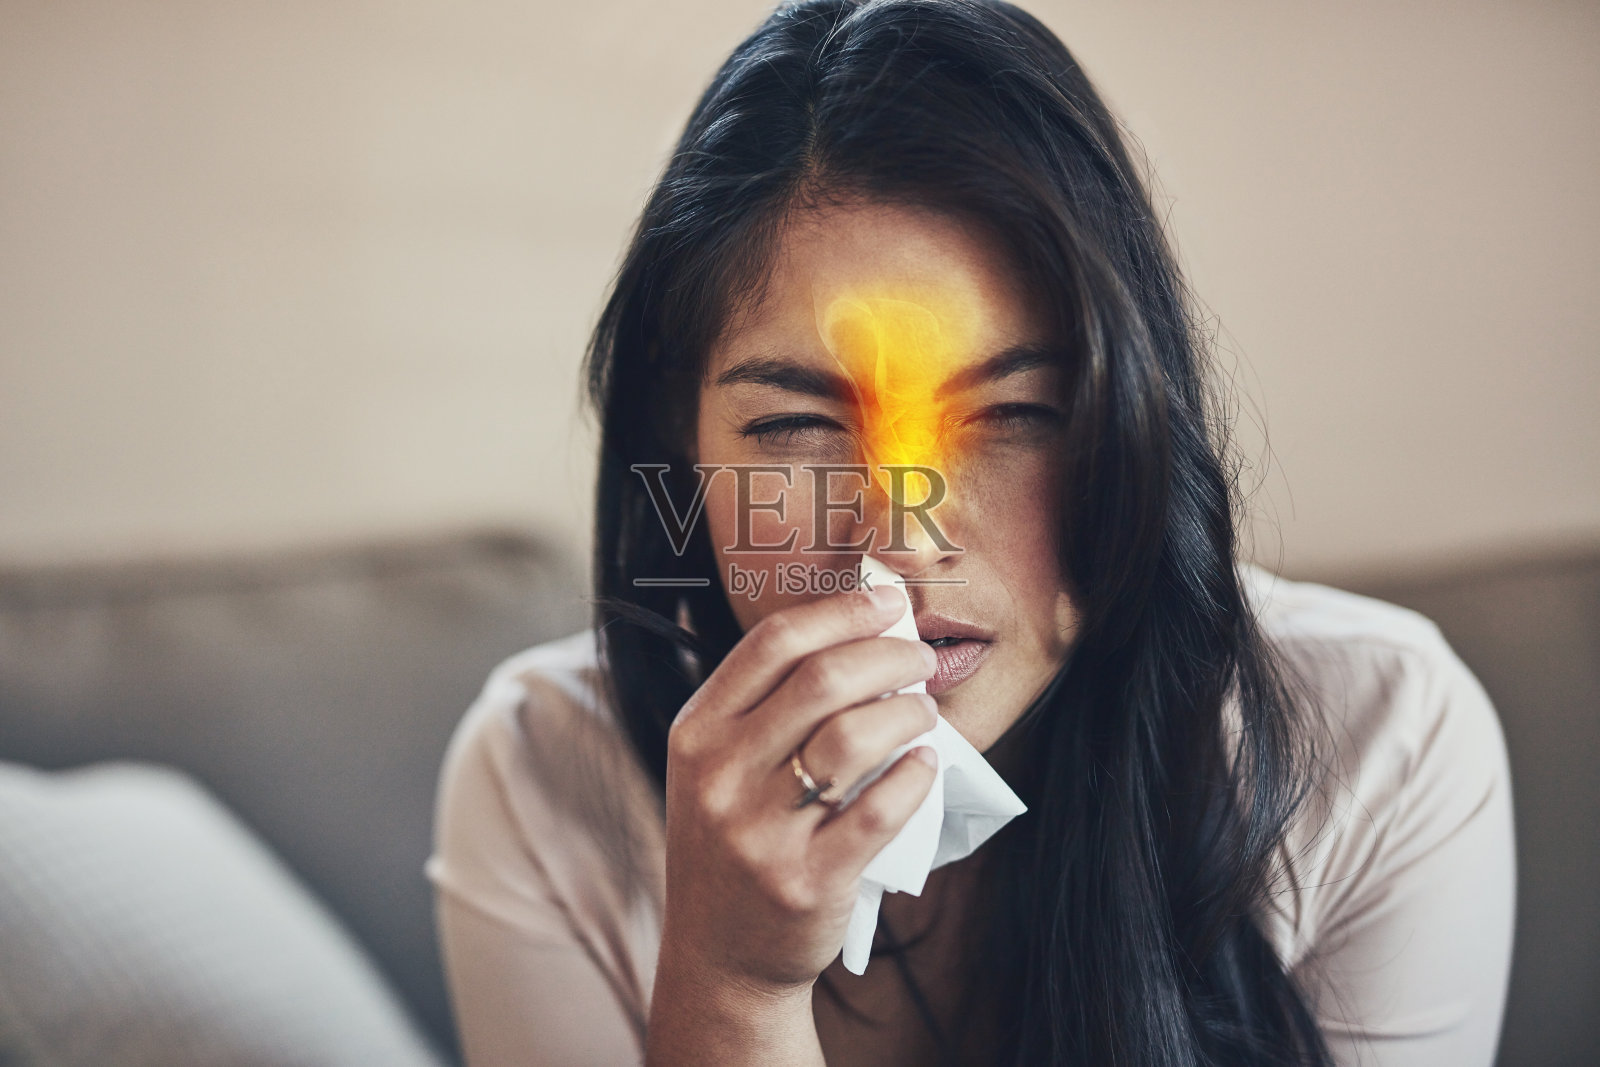 季节性过敏症会引起鼻子灼烧和鼻塞照片摄影图片